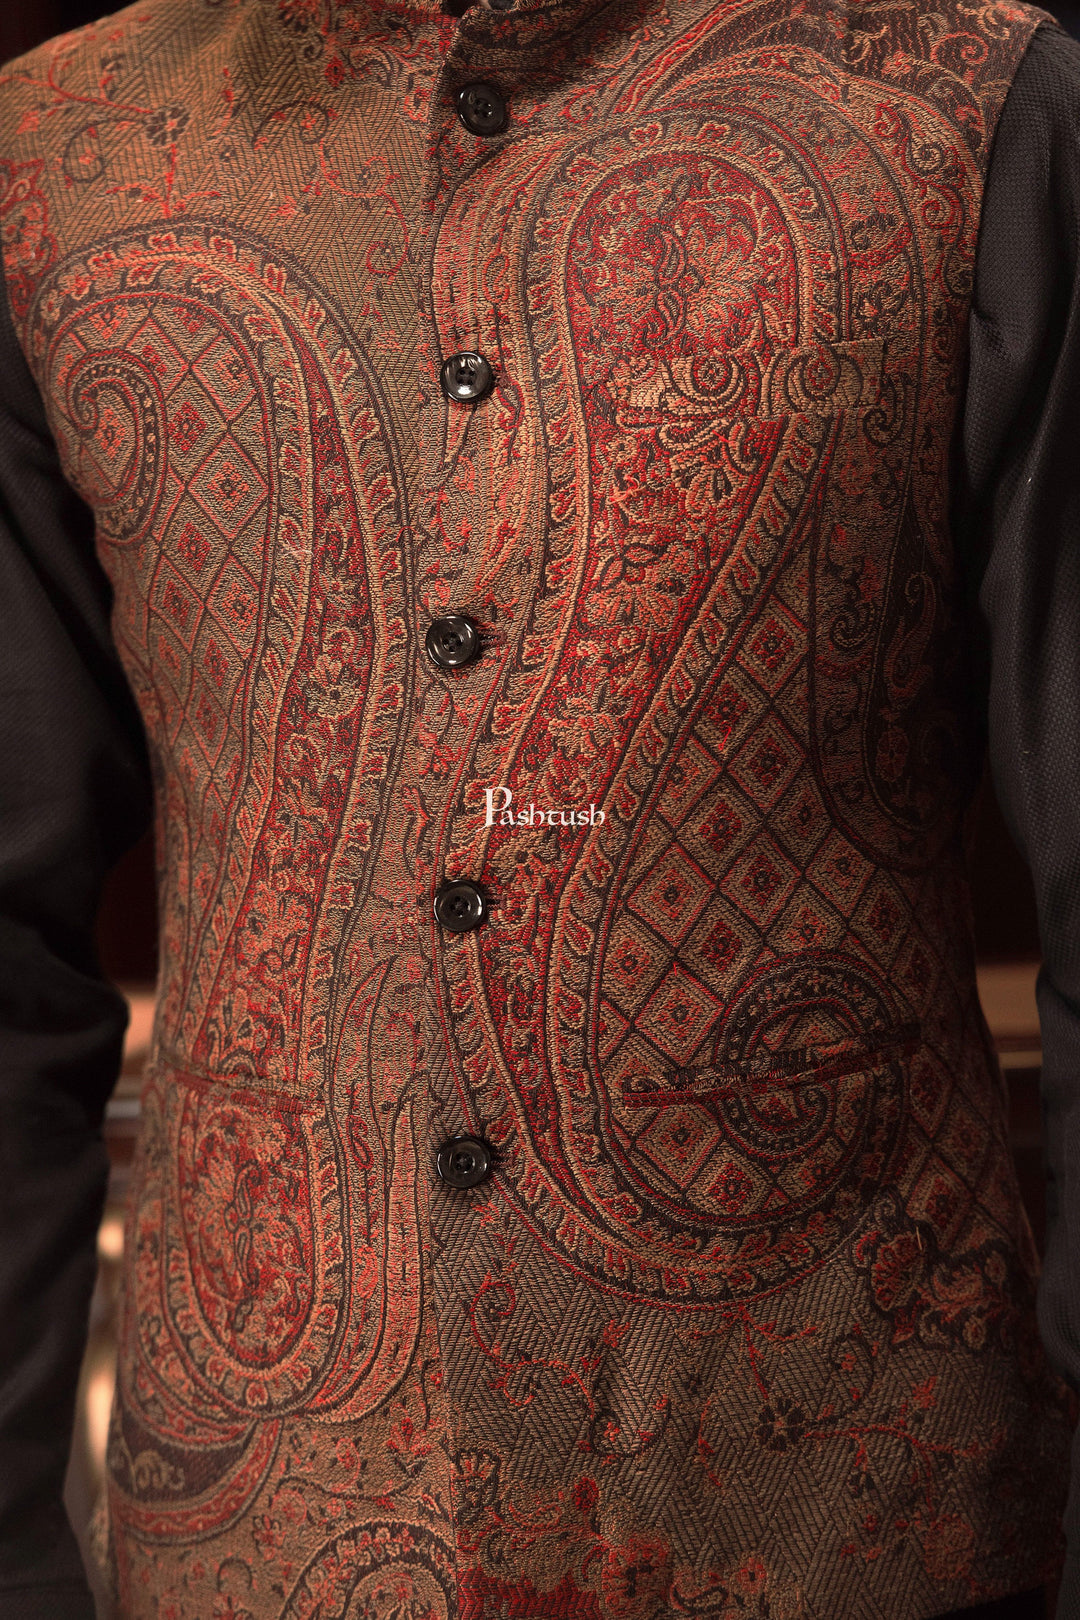 Pashtush India Coats & Jackets PASHTUSH MENS WOVEN JACQUARD WAISTCOAT, Structured SLIM FIT